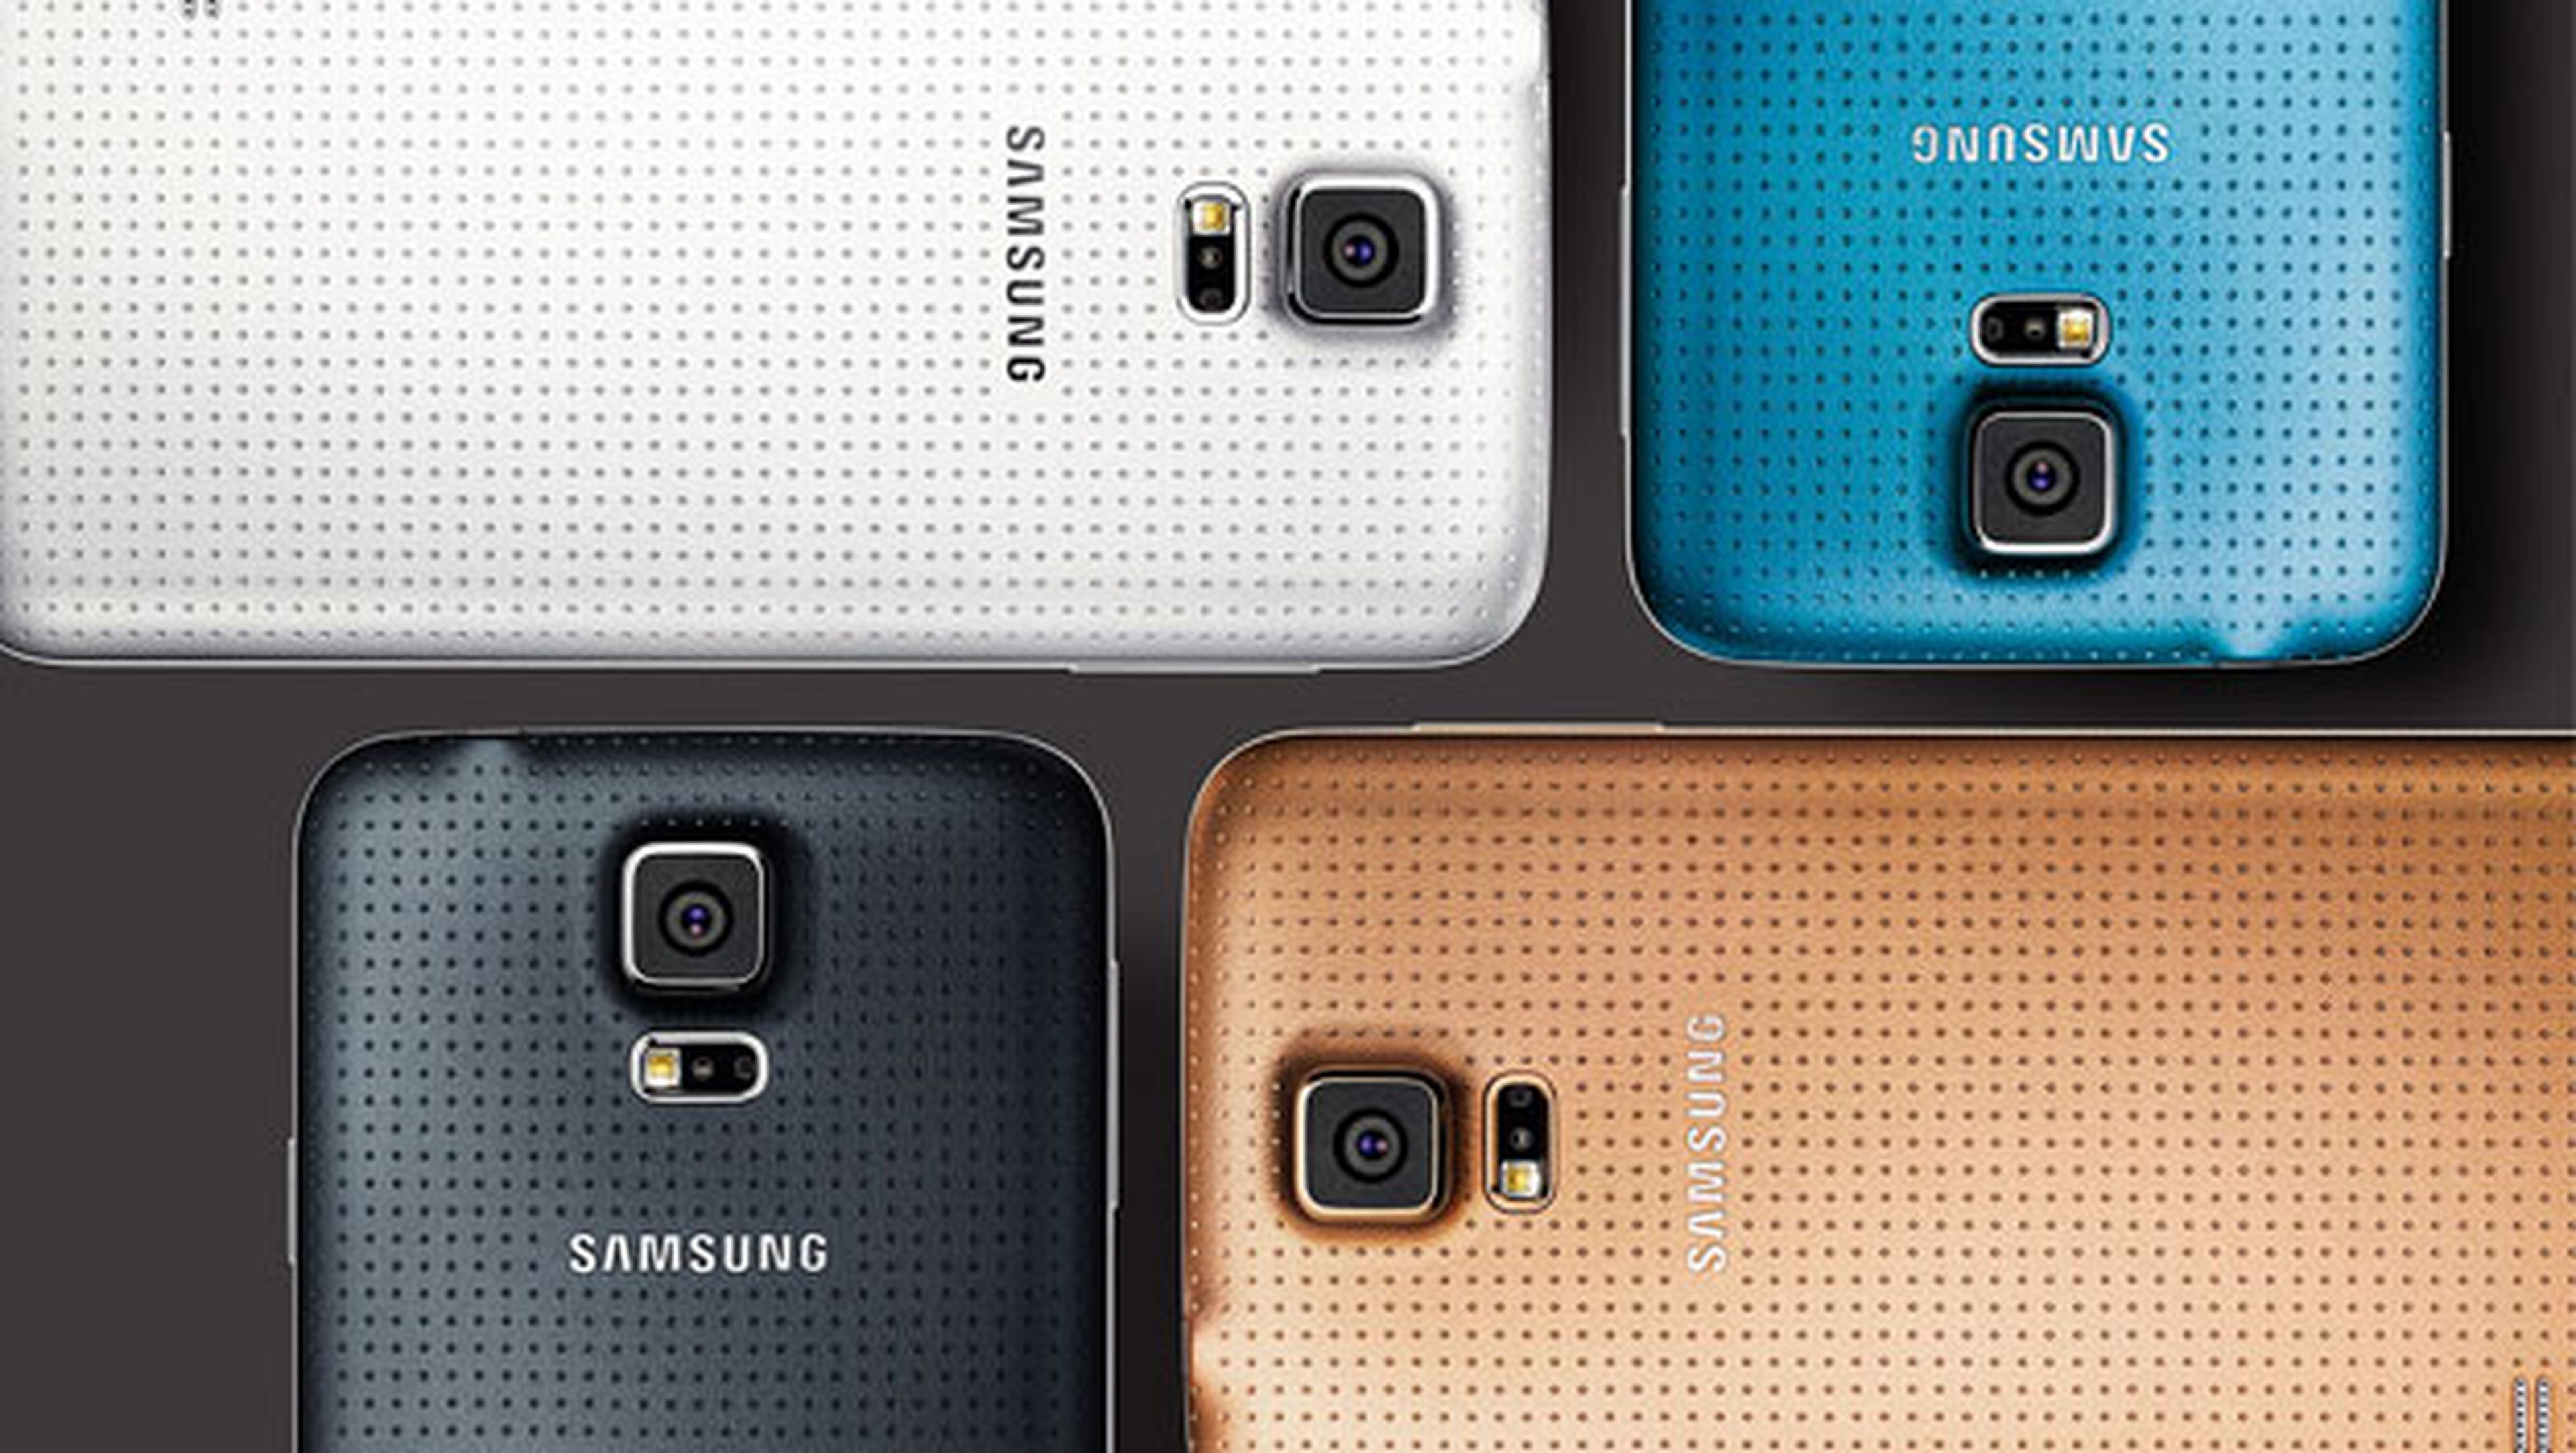 Samsung Galaxy ventas